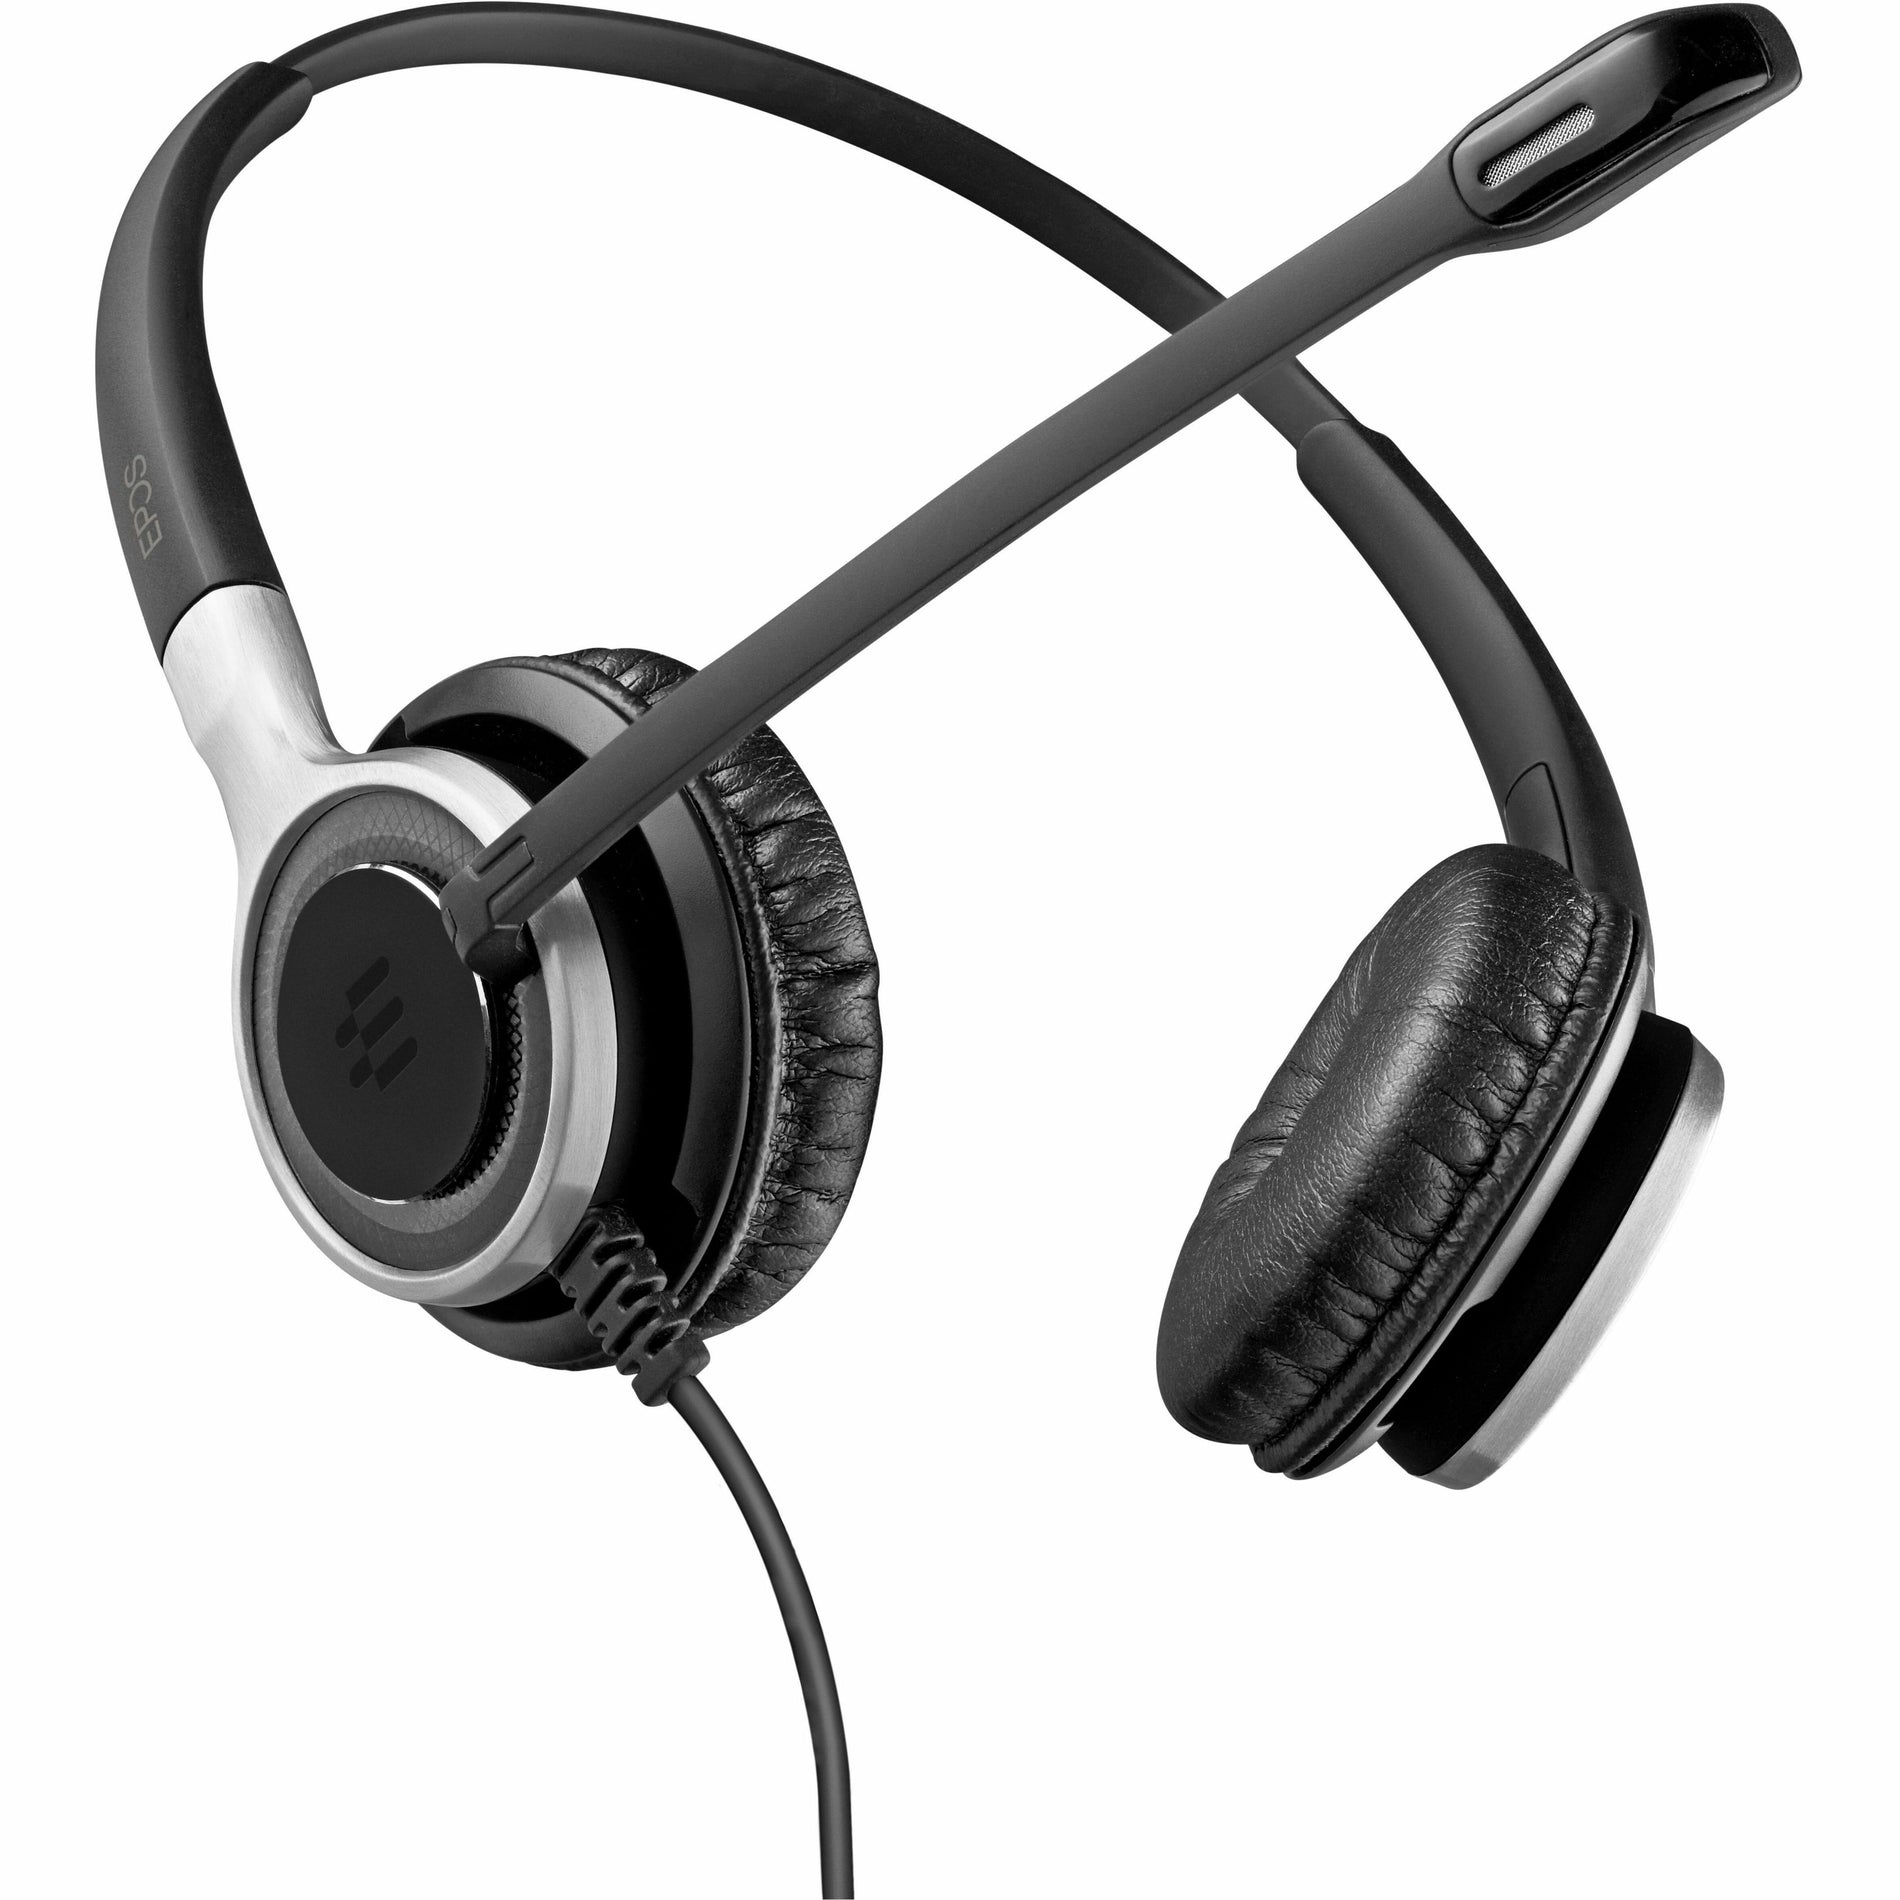 EPOS | SENNHEISER EPOS IMPACT SC 660 Auricular estéreo On-ear - Micrófono con cancelación de ruido - Negro Plata Descatalogado